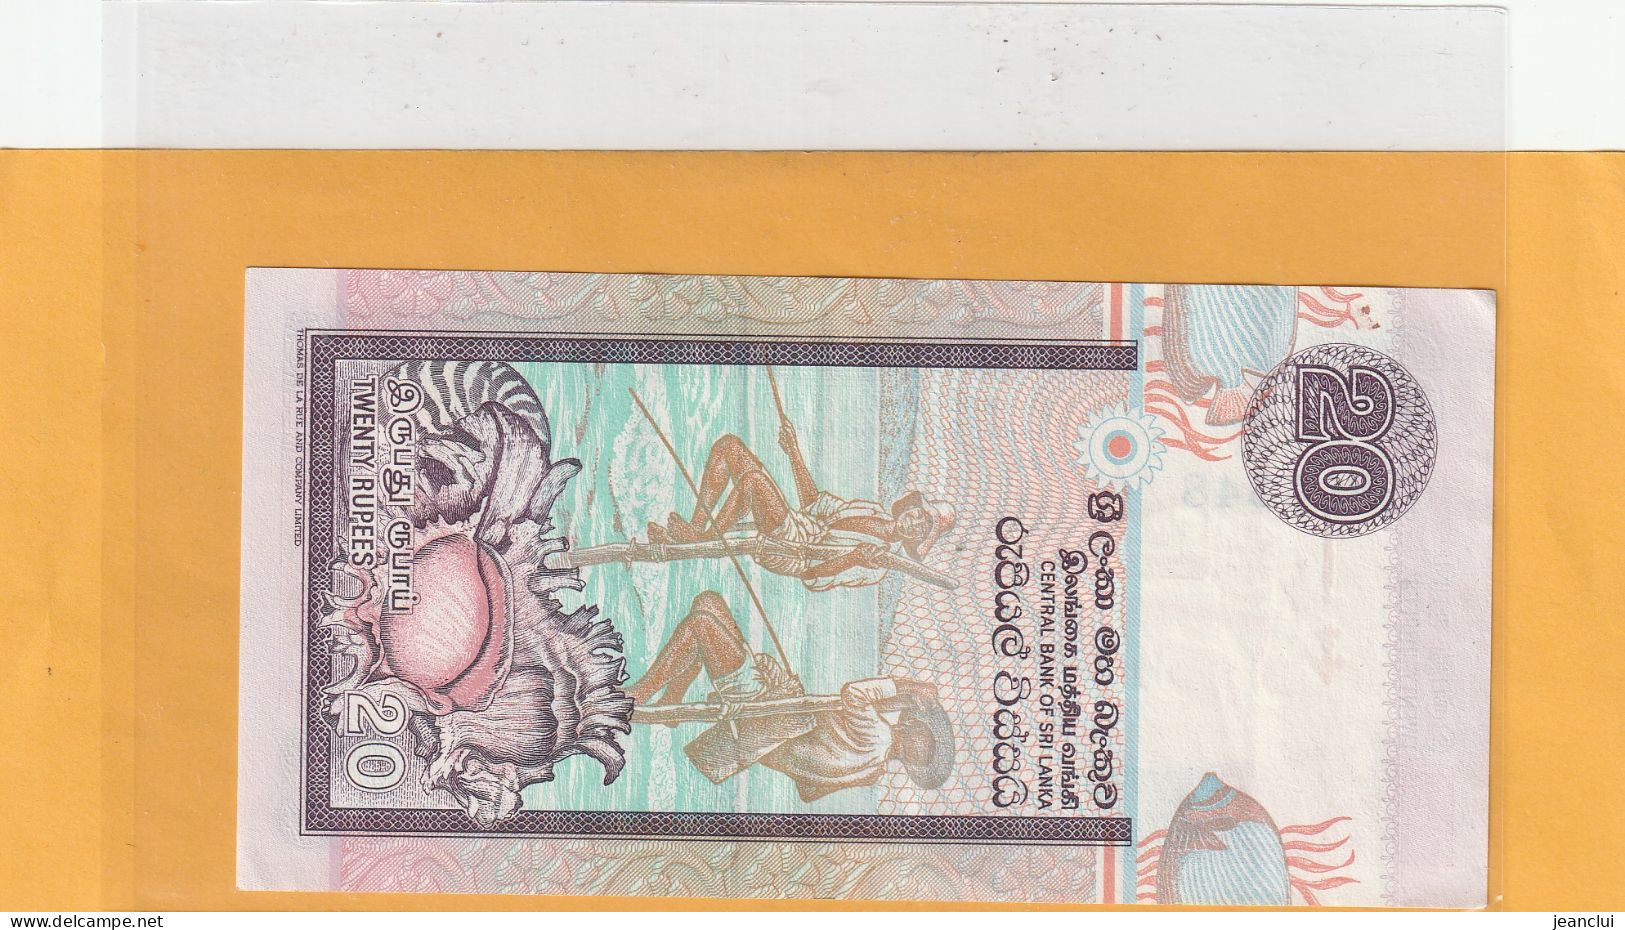 CENTRAL BANK OF SRI LANKA   .  20 RUPEES  .  15-11-1995  .  N°   L/80 896348 .  2 SCANNES  .  BILLET EN TRES BEL ETAT - Sri Lanka